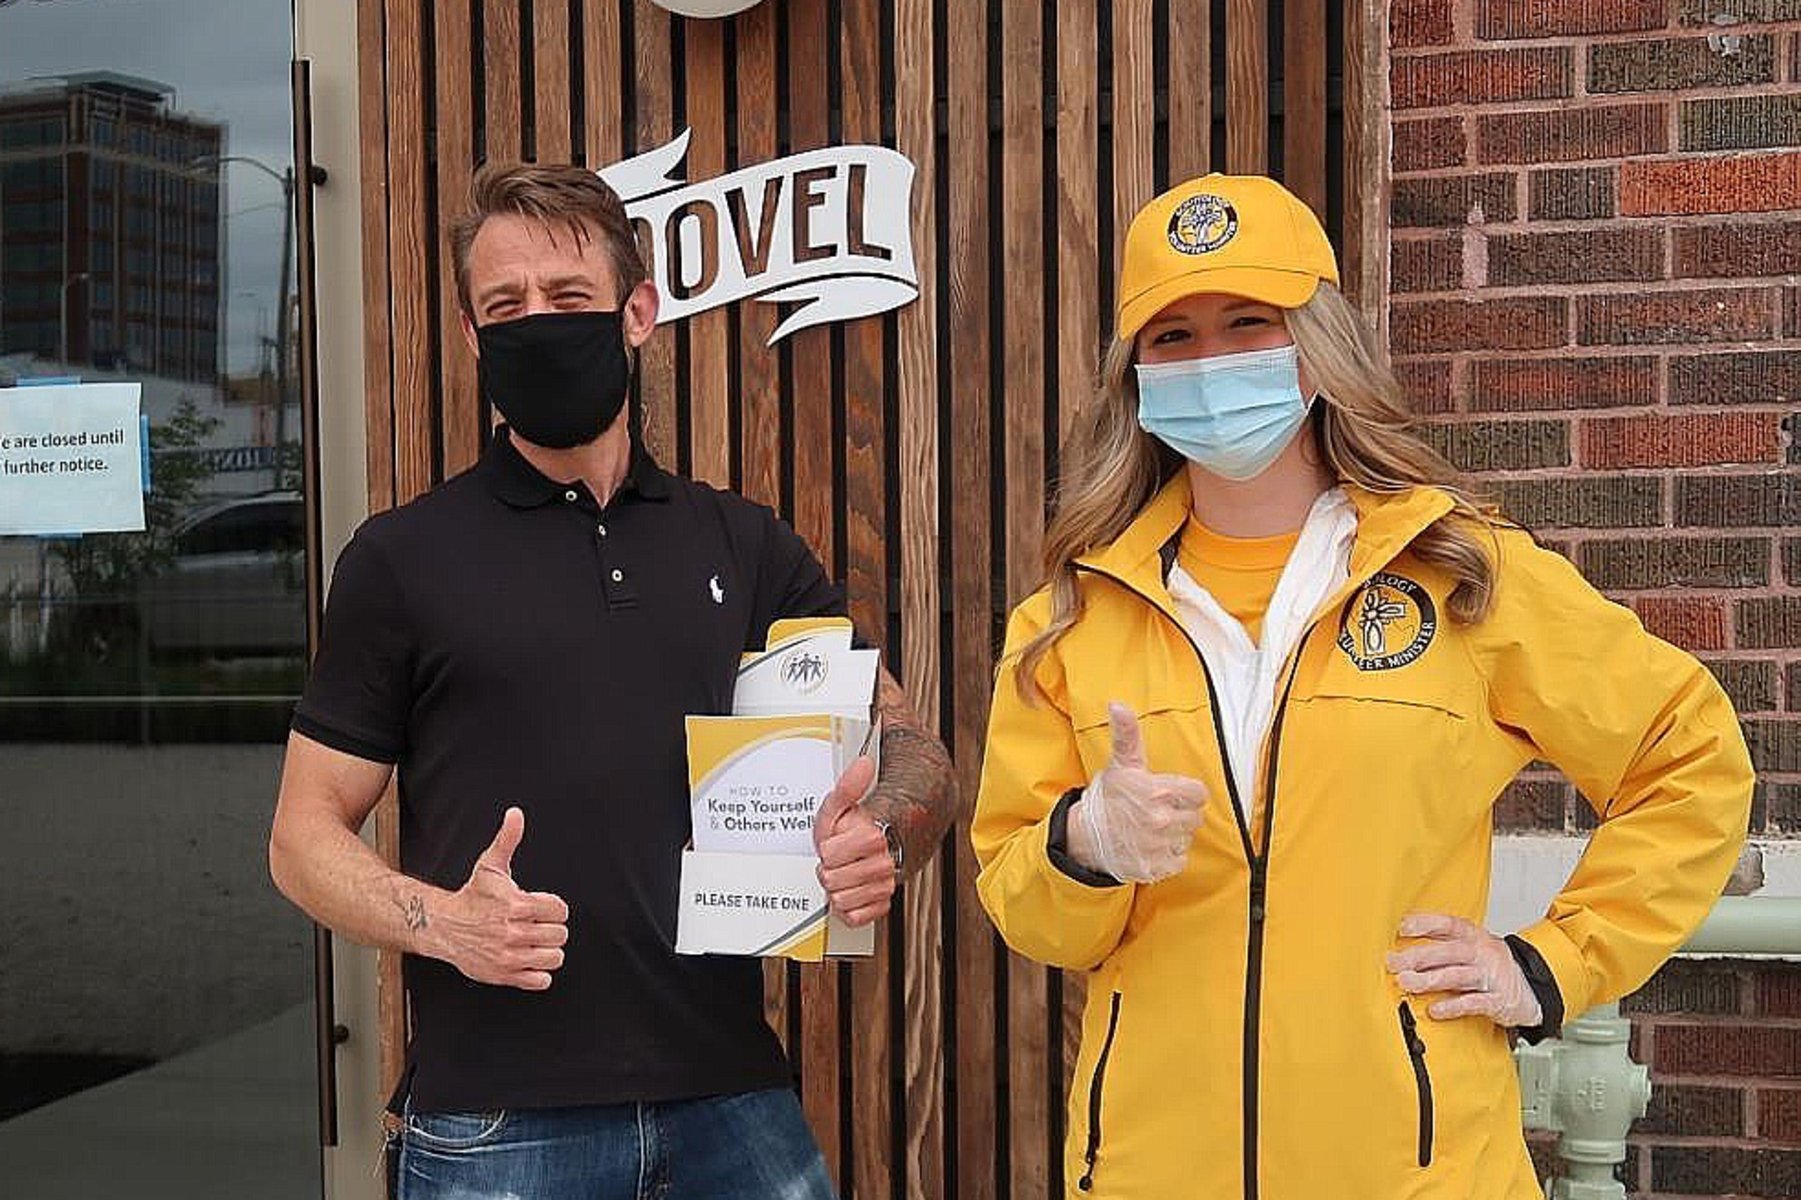 Scientologická církev Kansas City se obrací na komunitu s důležitými informacemi o tom, jak dostat pandemii pod kontrolu.